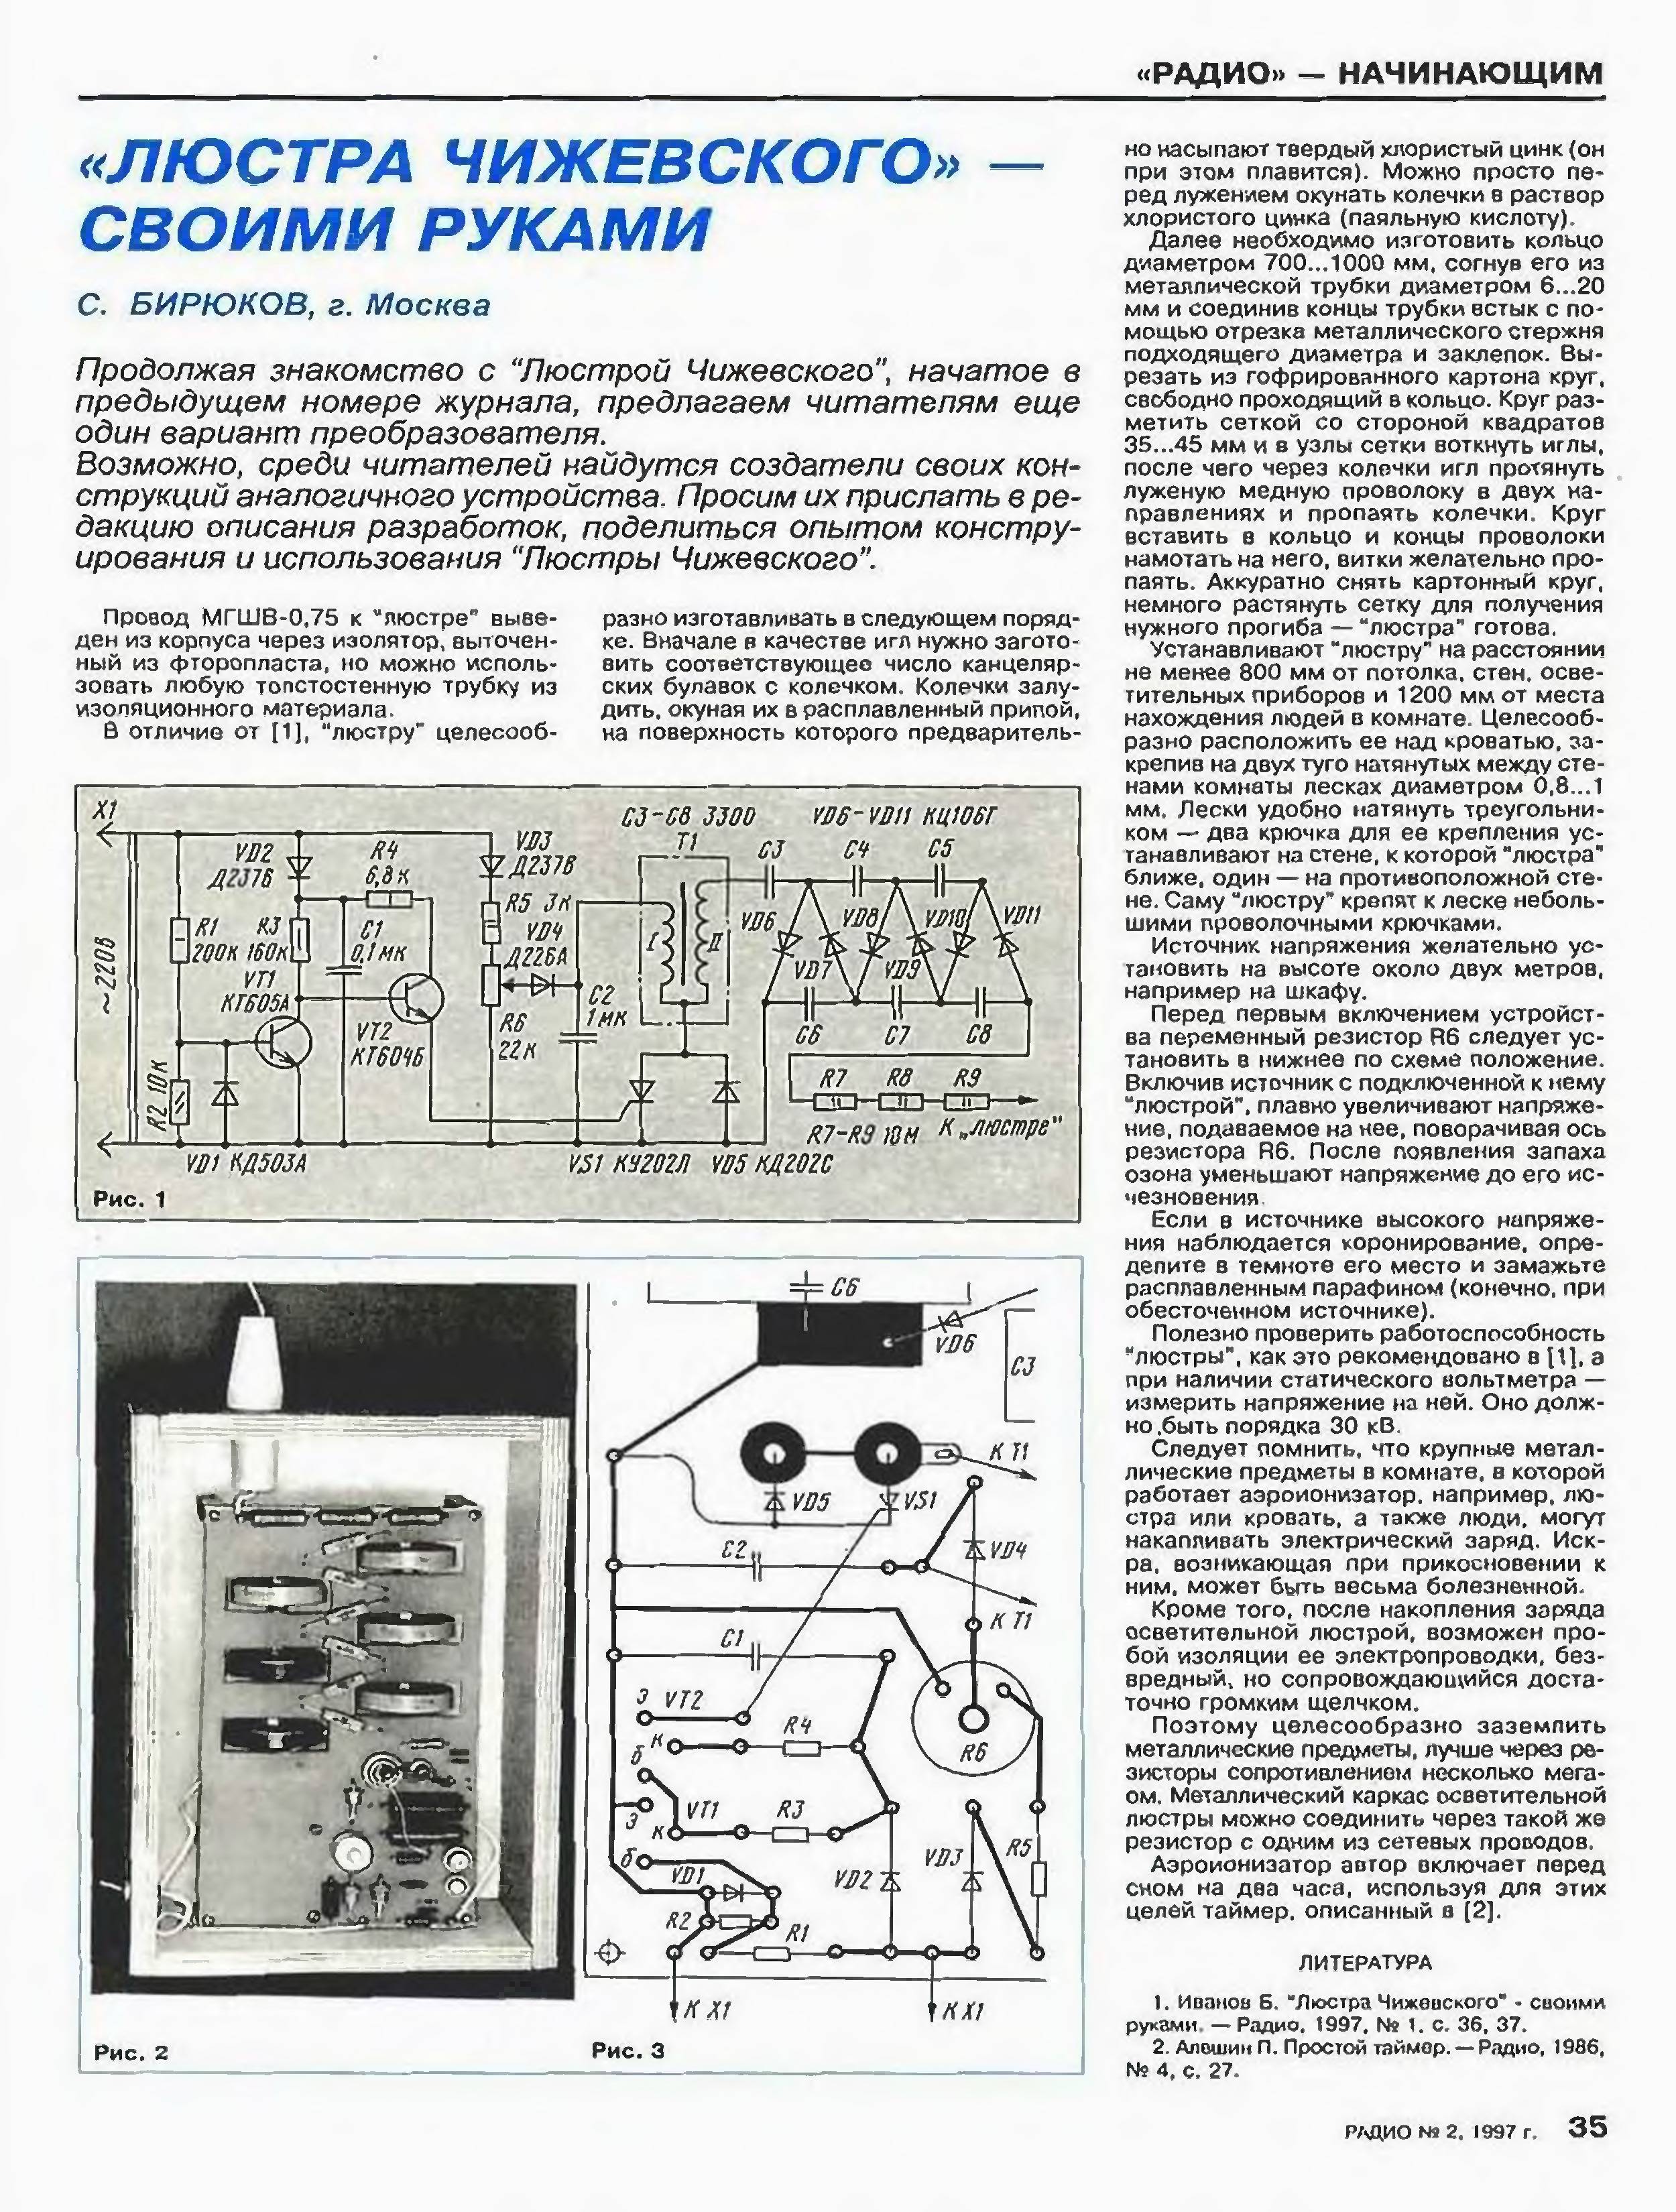 Как сделать люстру Чижевского своими руками – описание и схема